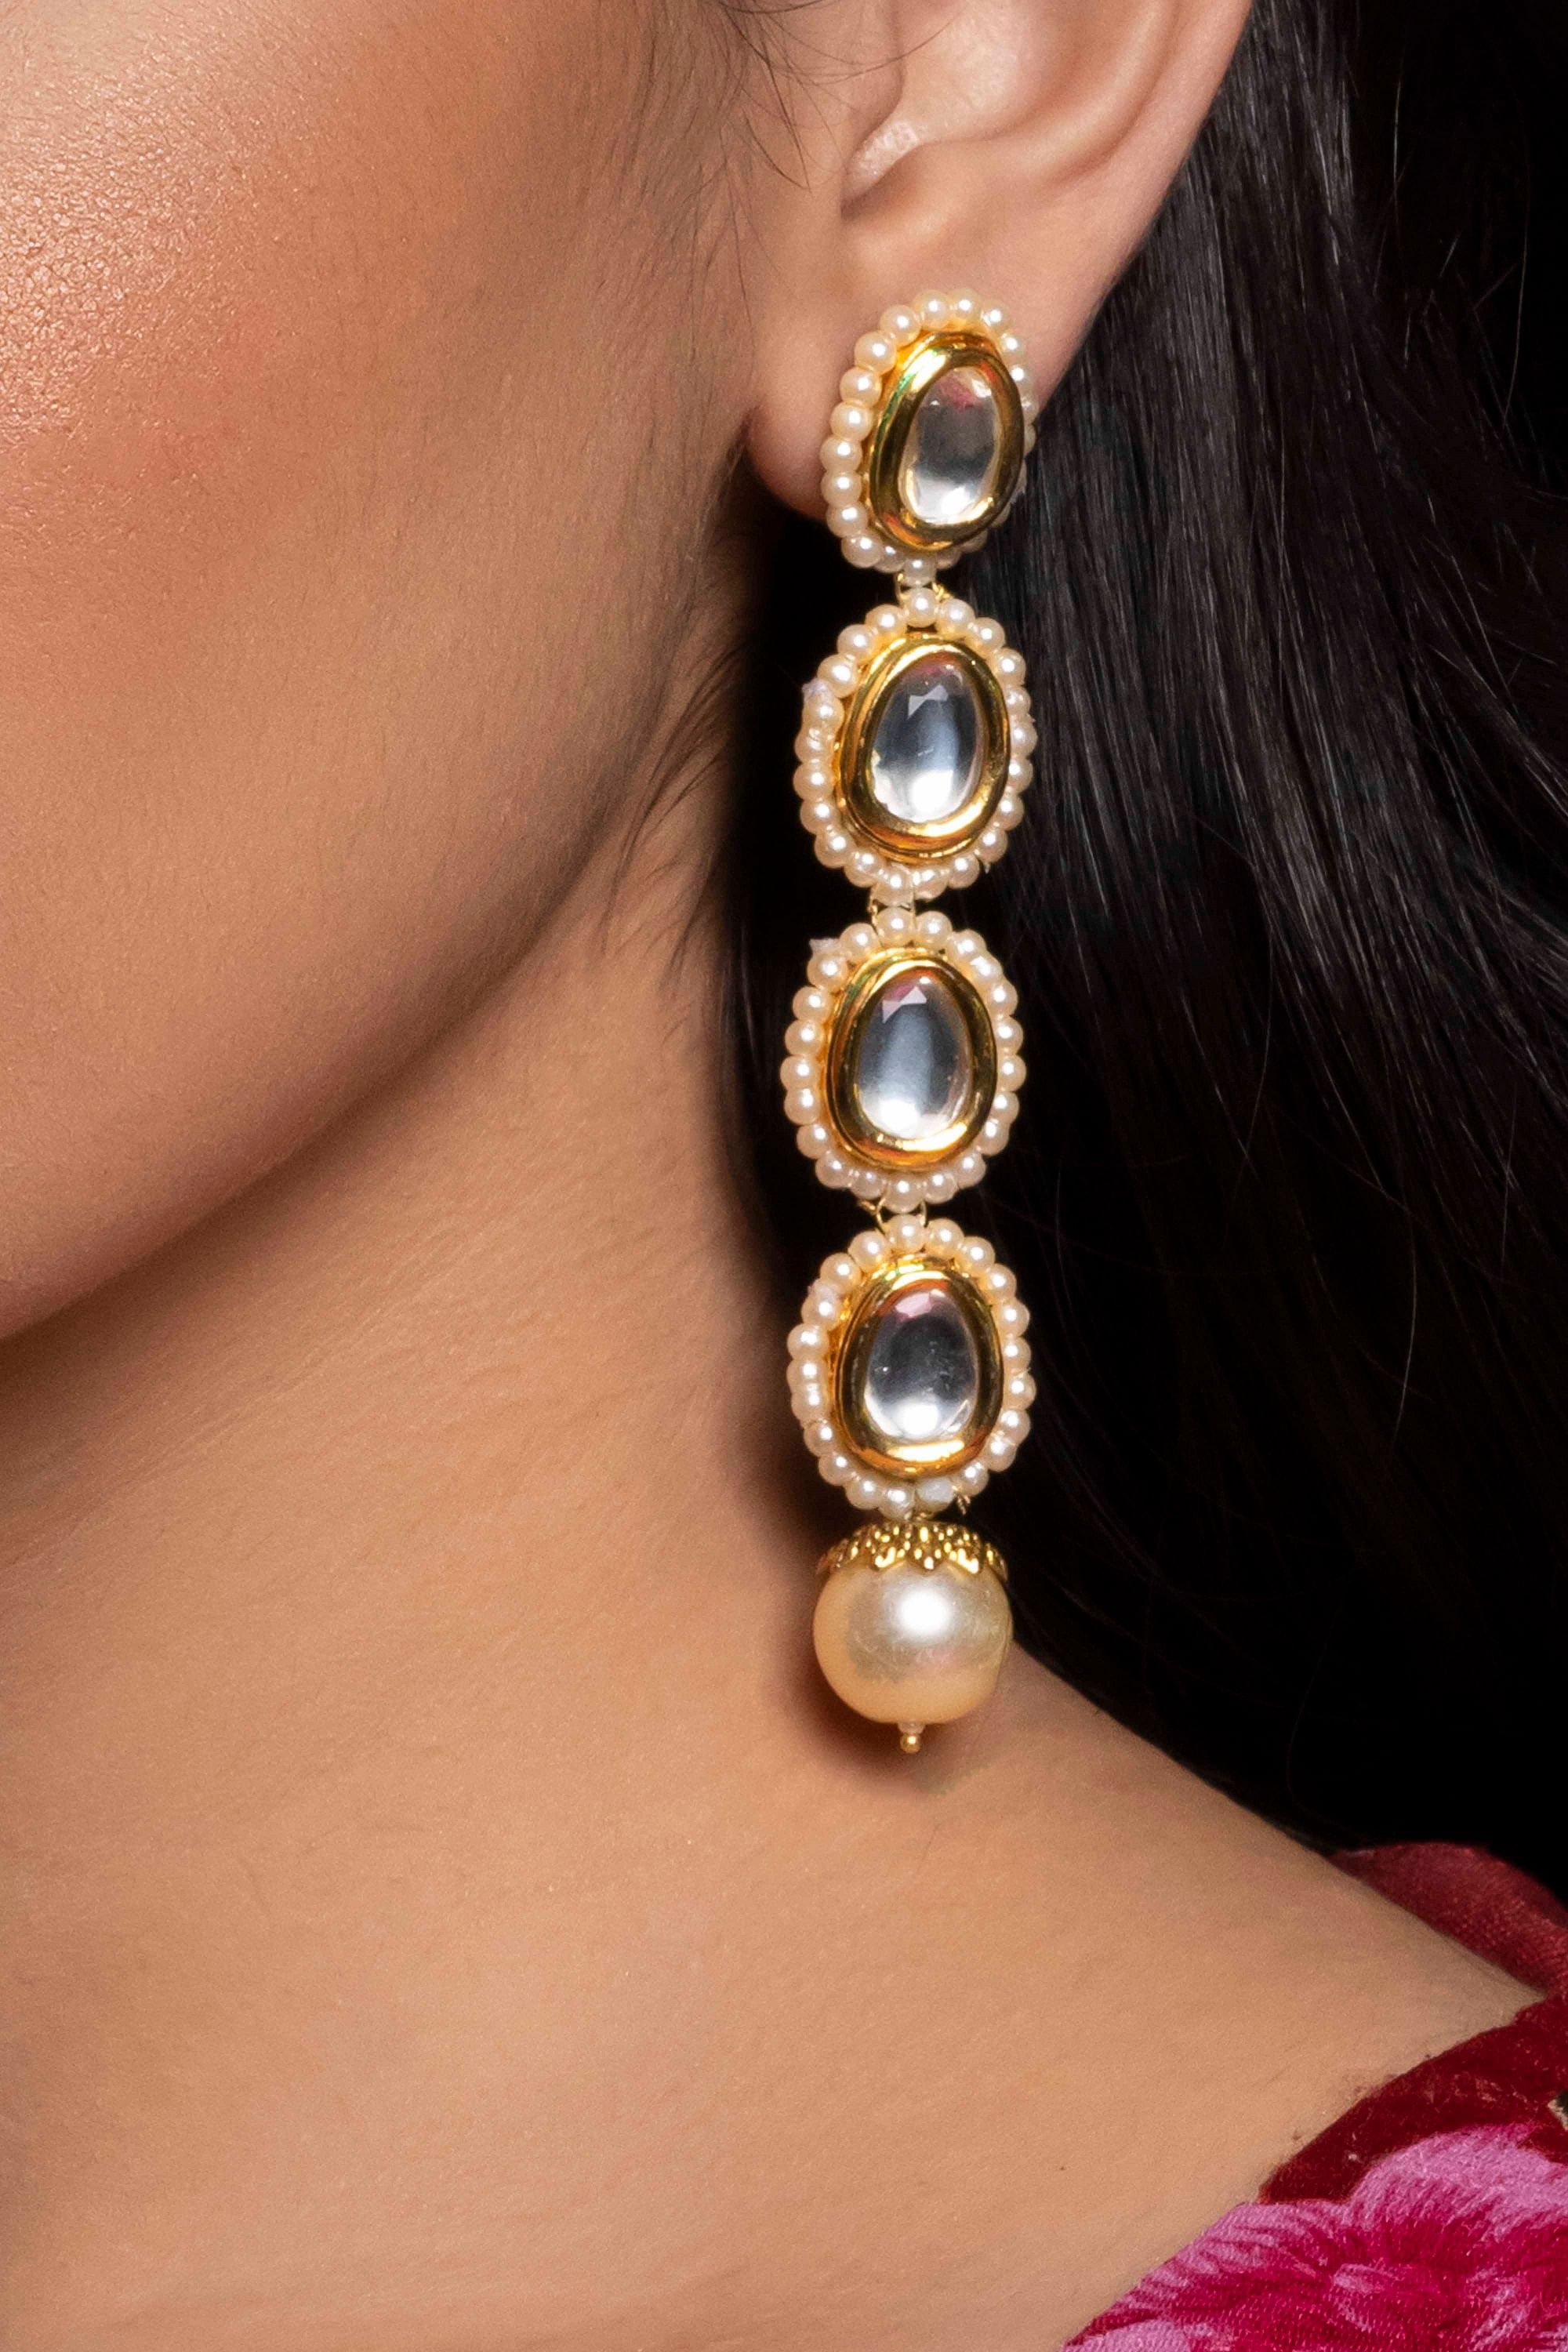 Indian Gold Plated Kundan Drop Earrings Polki Party Wear Pakistani Jewelry  Hook | eBay